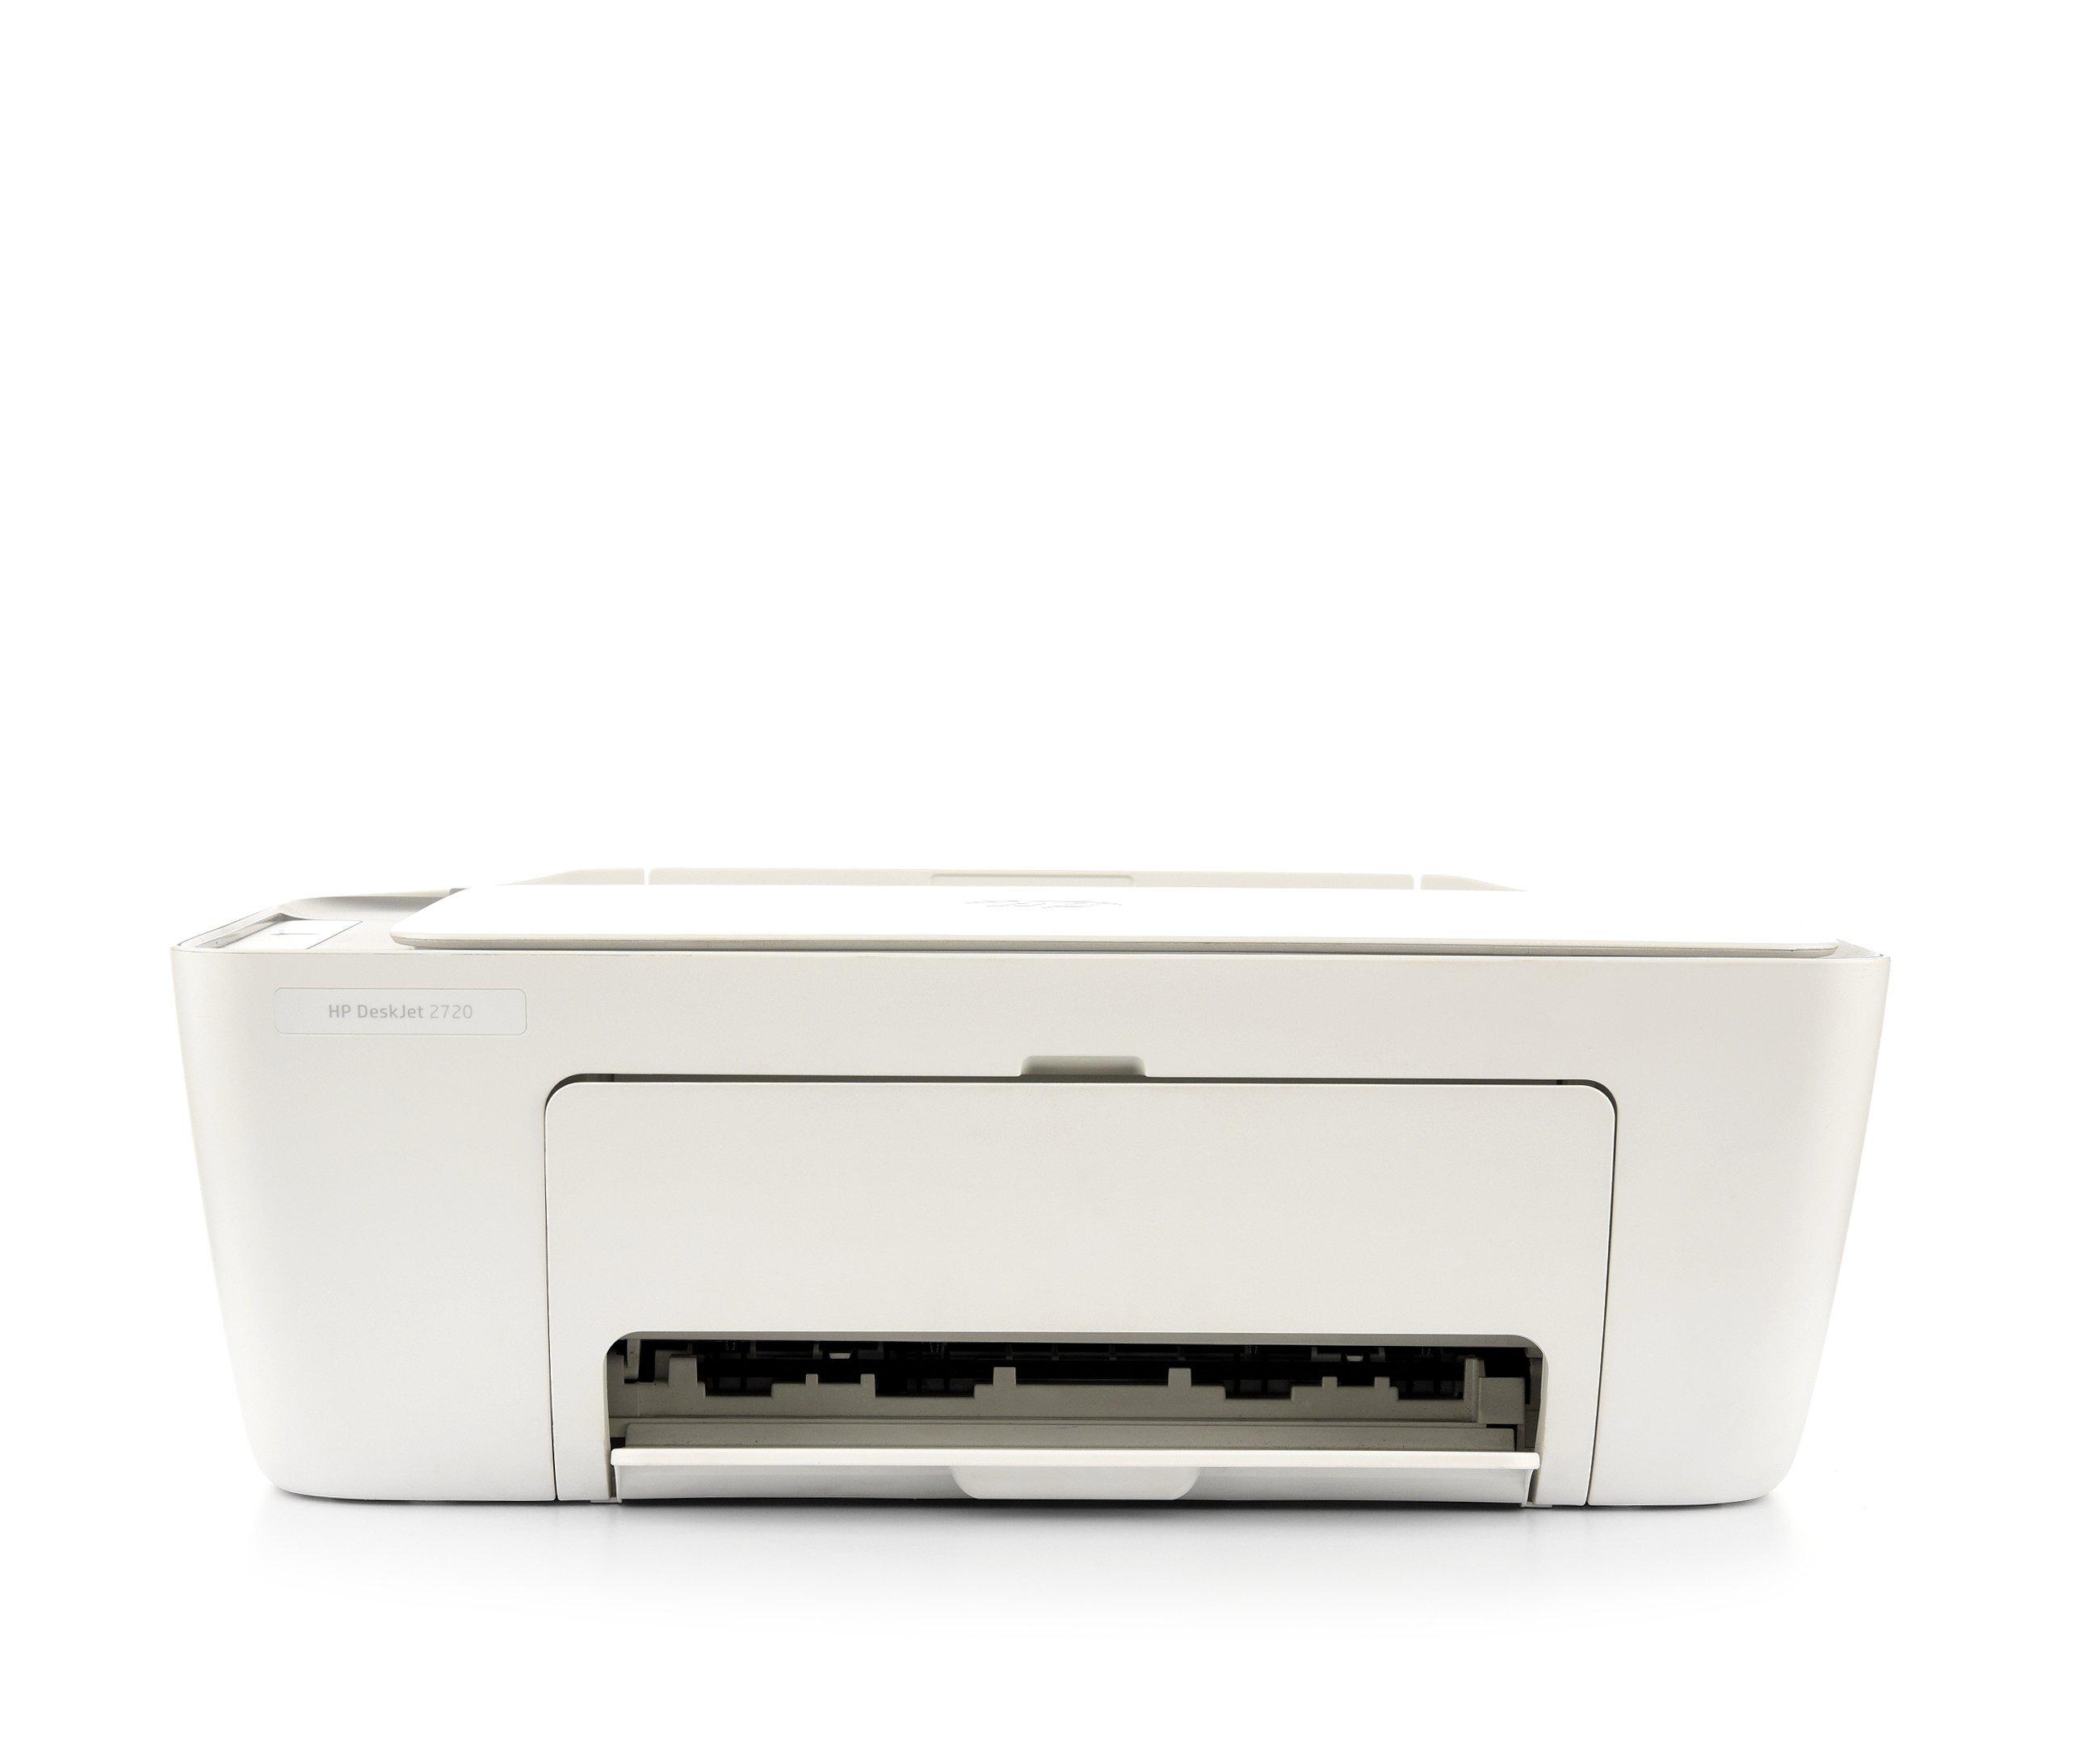 Buy HP DeskJet 2720 All-in-One Printer, Print, Copy, Scan, Wireless, White in Saudi Arabia